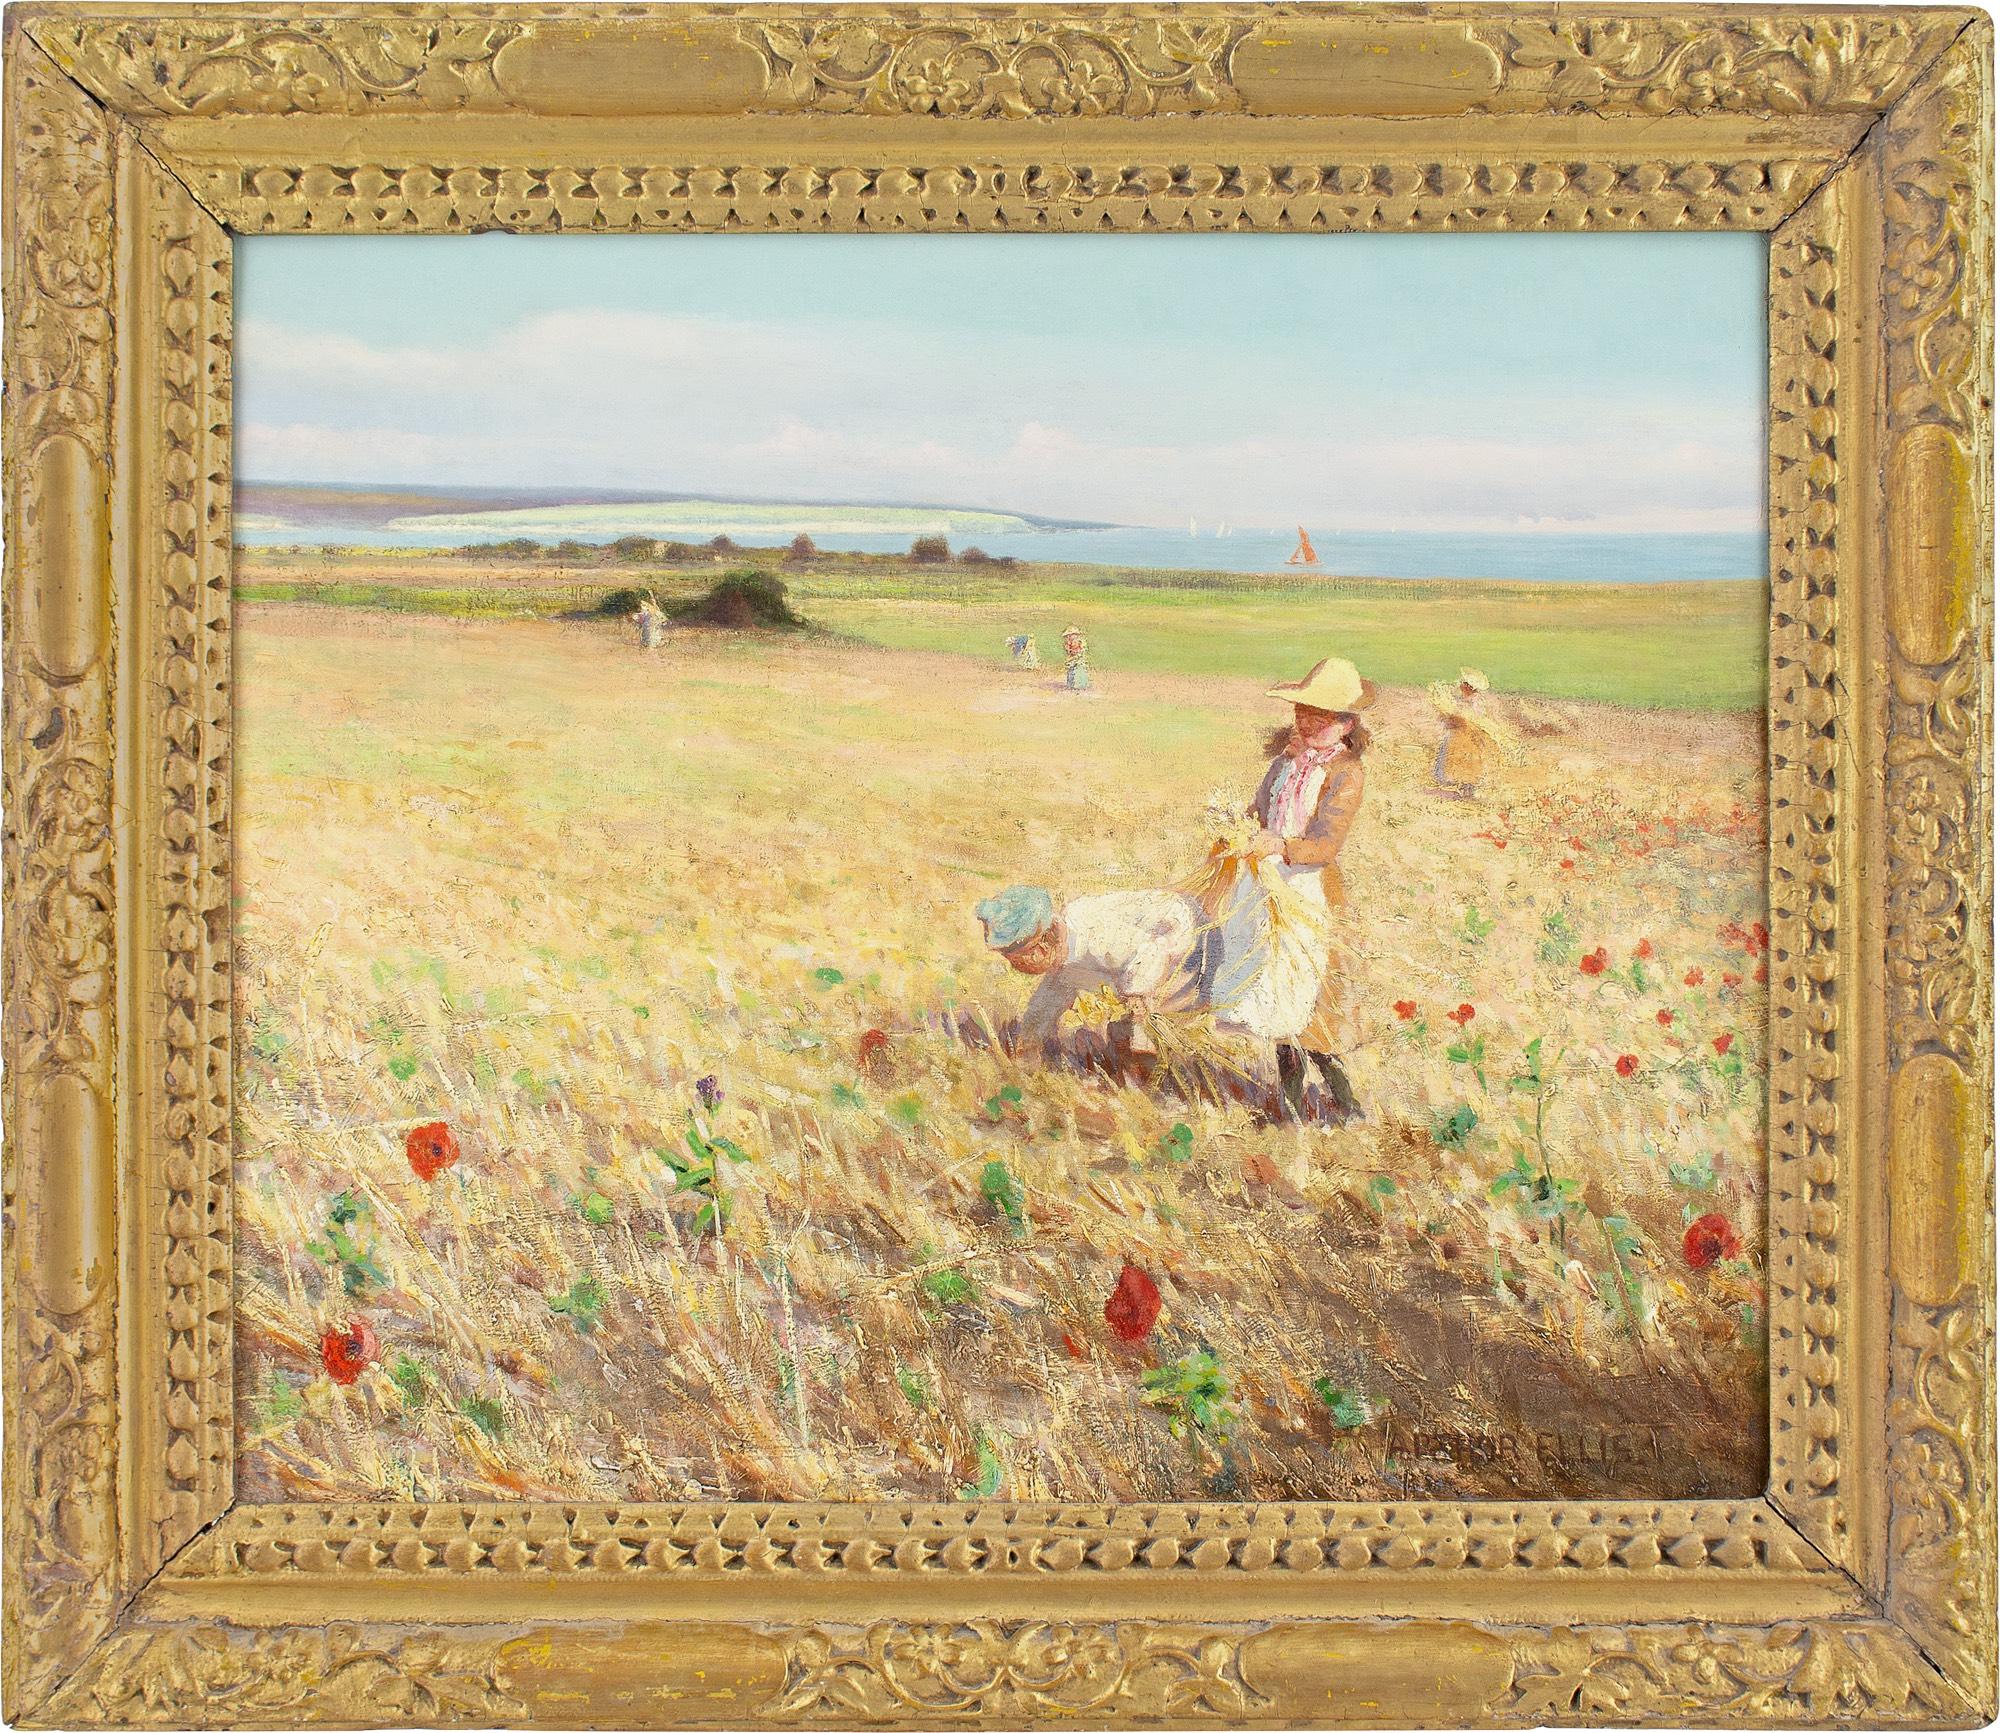 Cette belle peinture à l'huile du début du XXe siècle de l'artiste britannique Arthur Ellis (1856-1918) représente des enfants dans un champ de maïs devant une vue lointaine de la mer.

Ellis était avant tout un excellent dessinateur, qui a étudié à